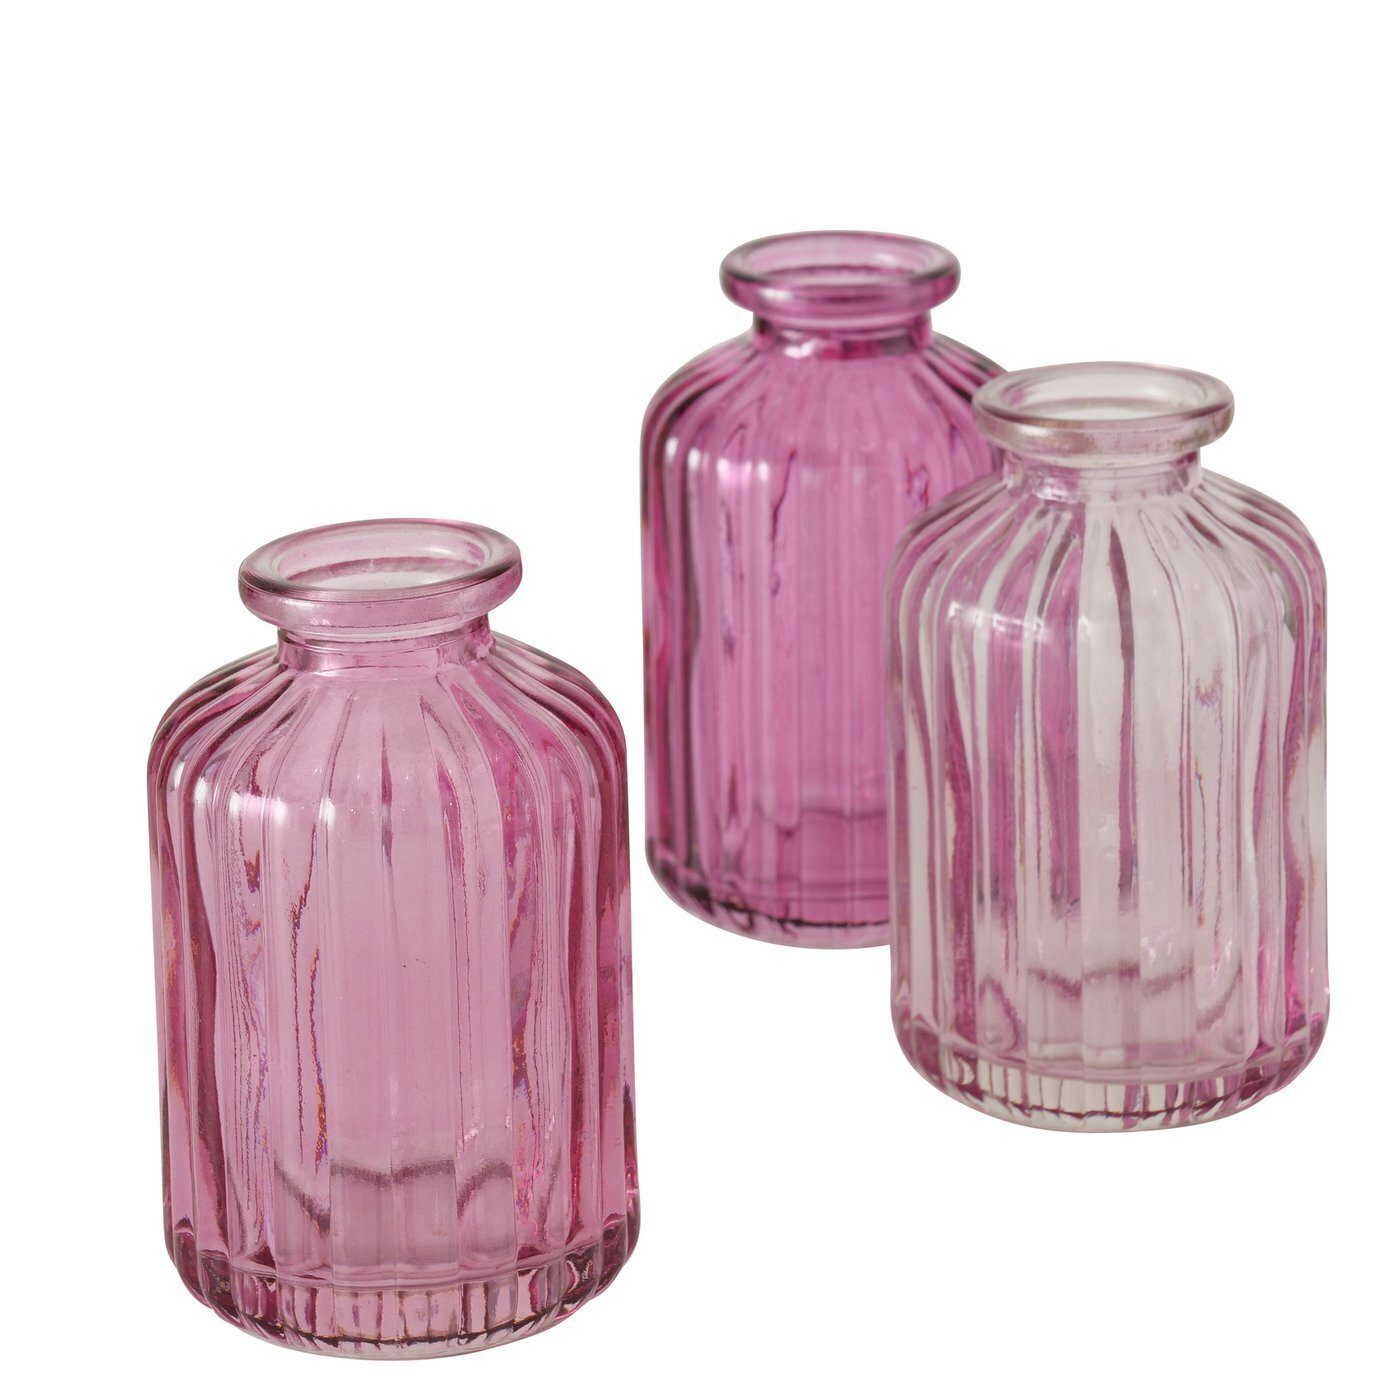 BOLTZE GRUPPE GmbH Dekovase Vase Merula 3teilig pink | Dekovasen